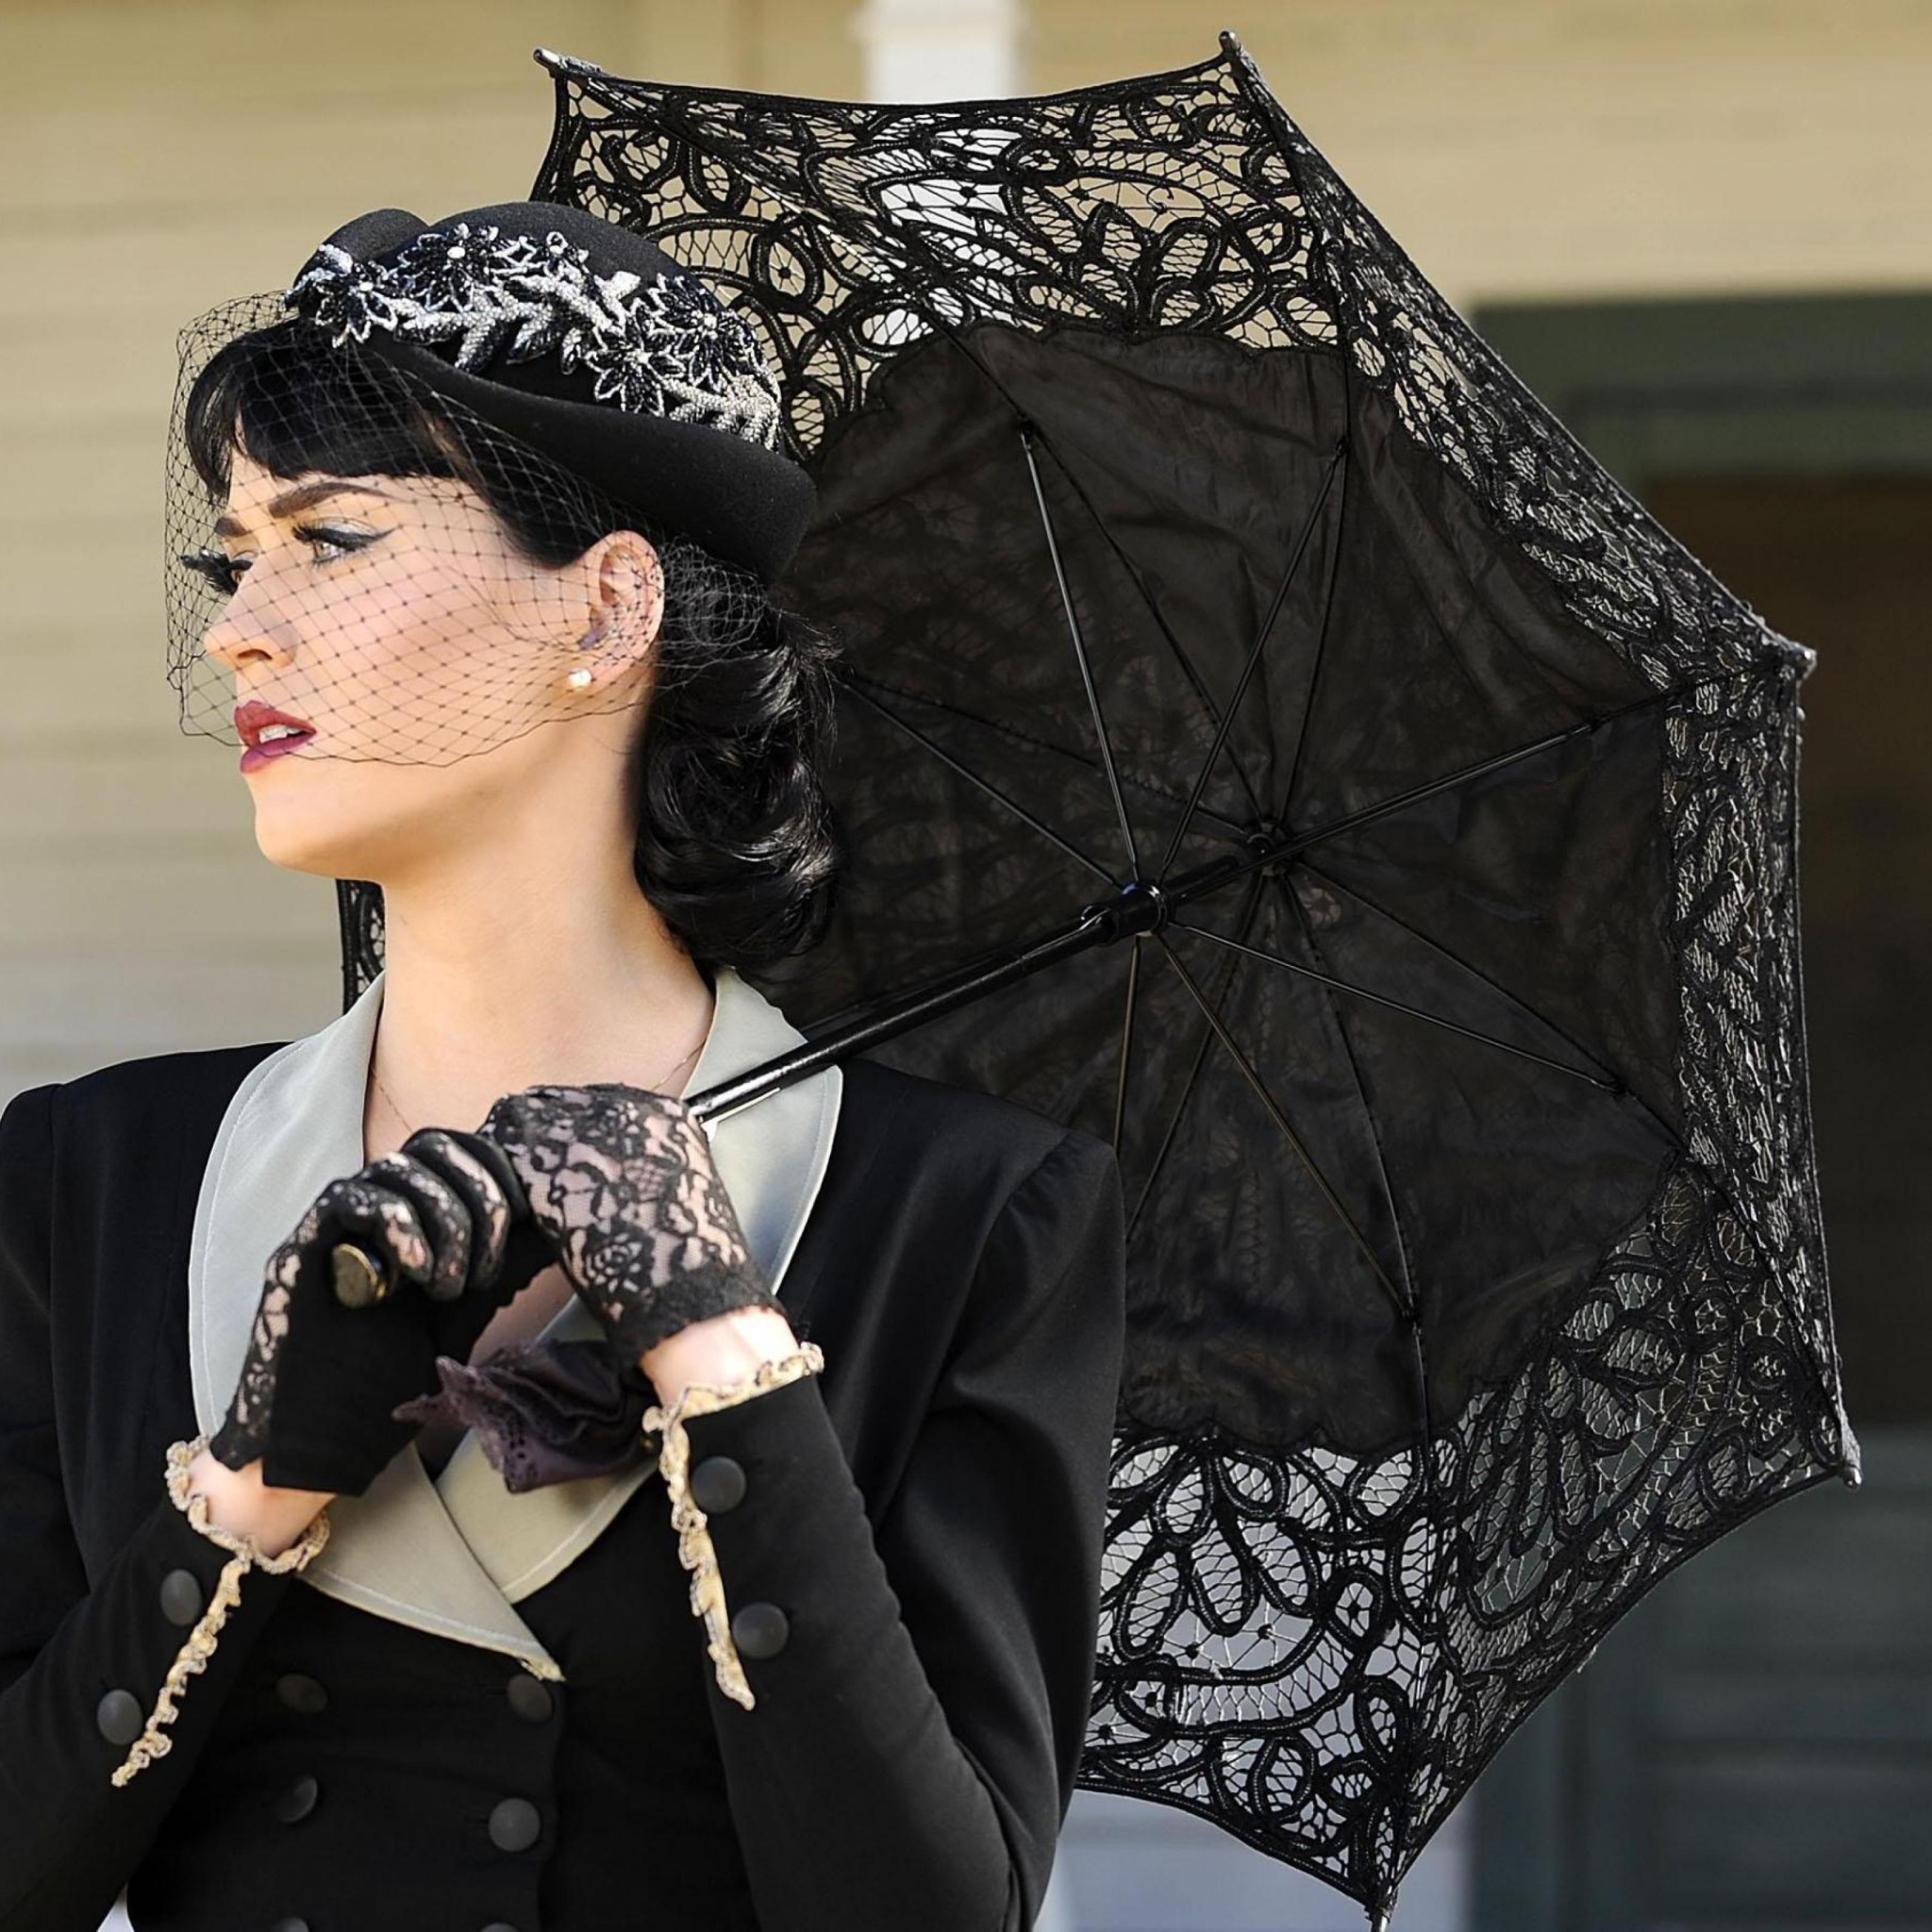 Katy Perry Black Umbrella wallpaper 2048x2048